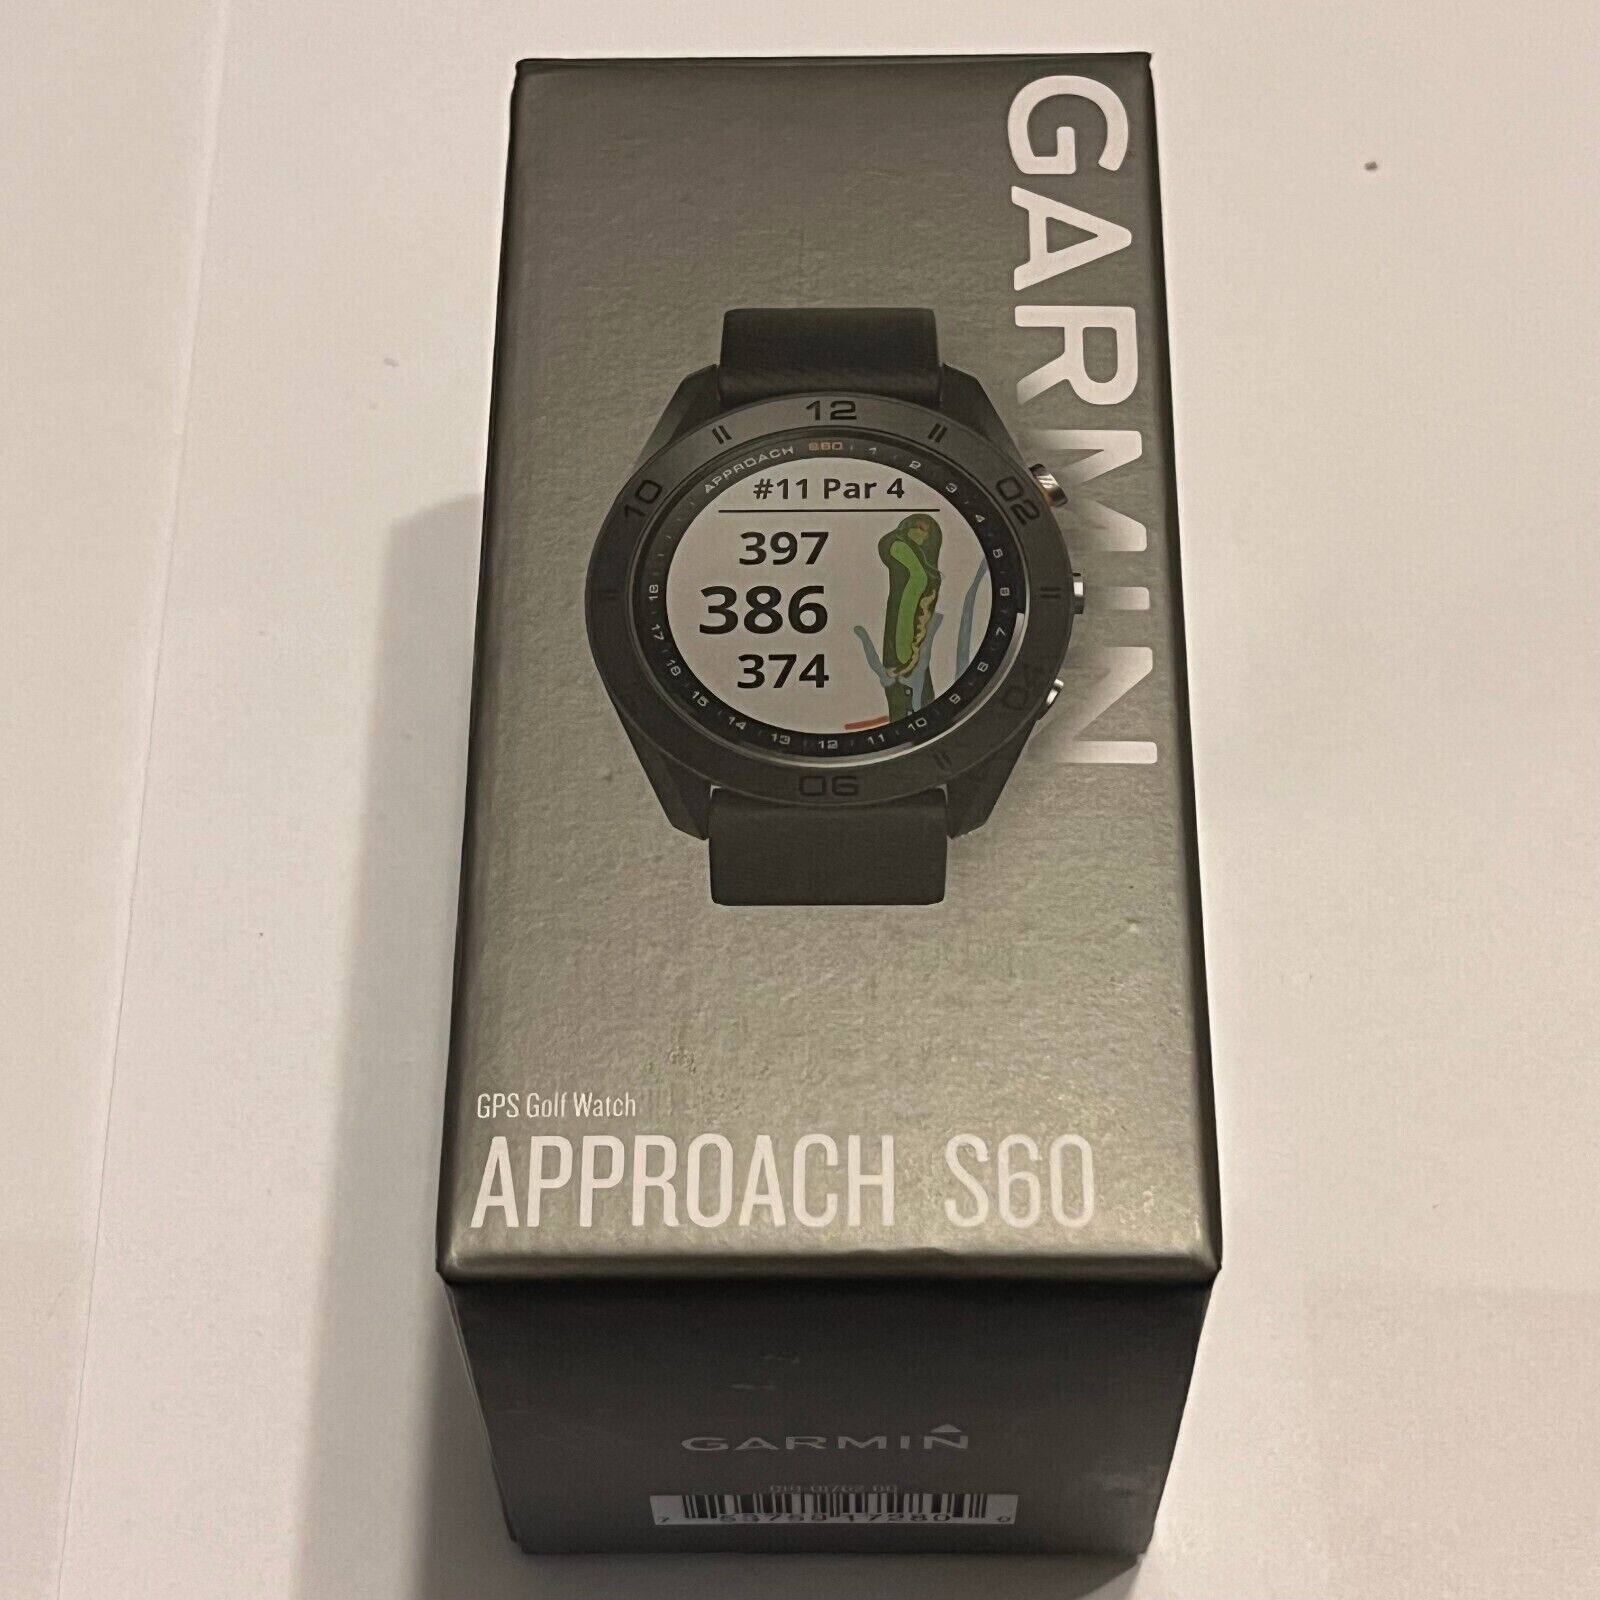 Garmin Approach S60 Premium Golf GPS Smart Watch Range Finder Black 010-01702-00